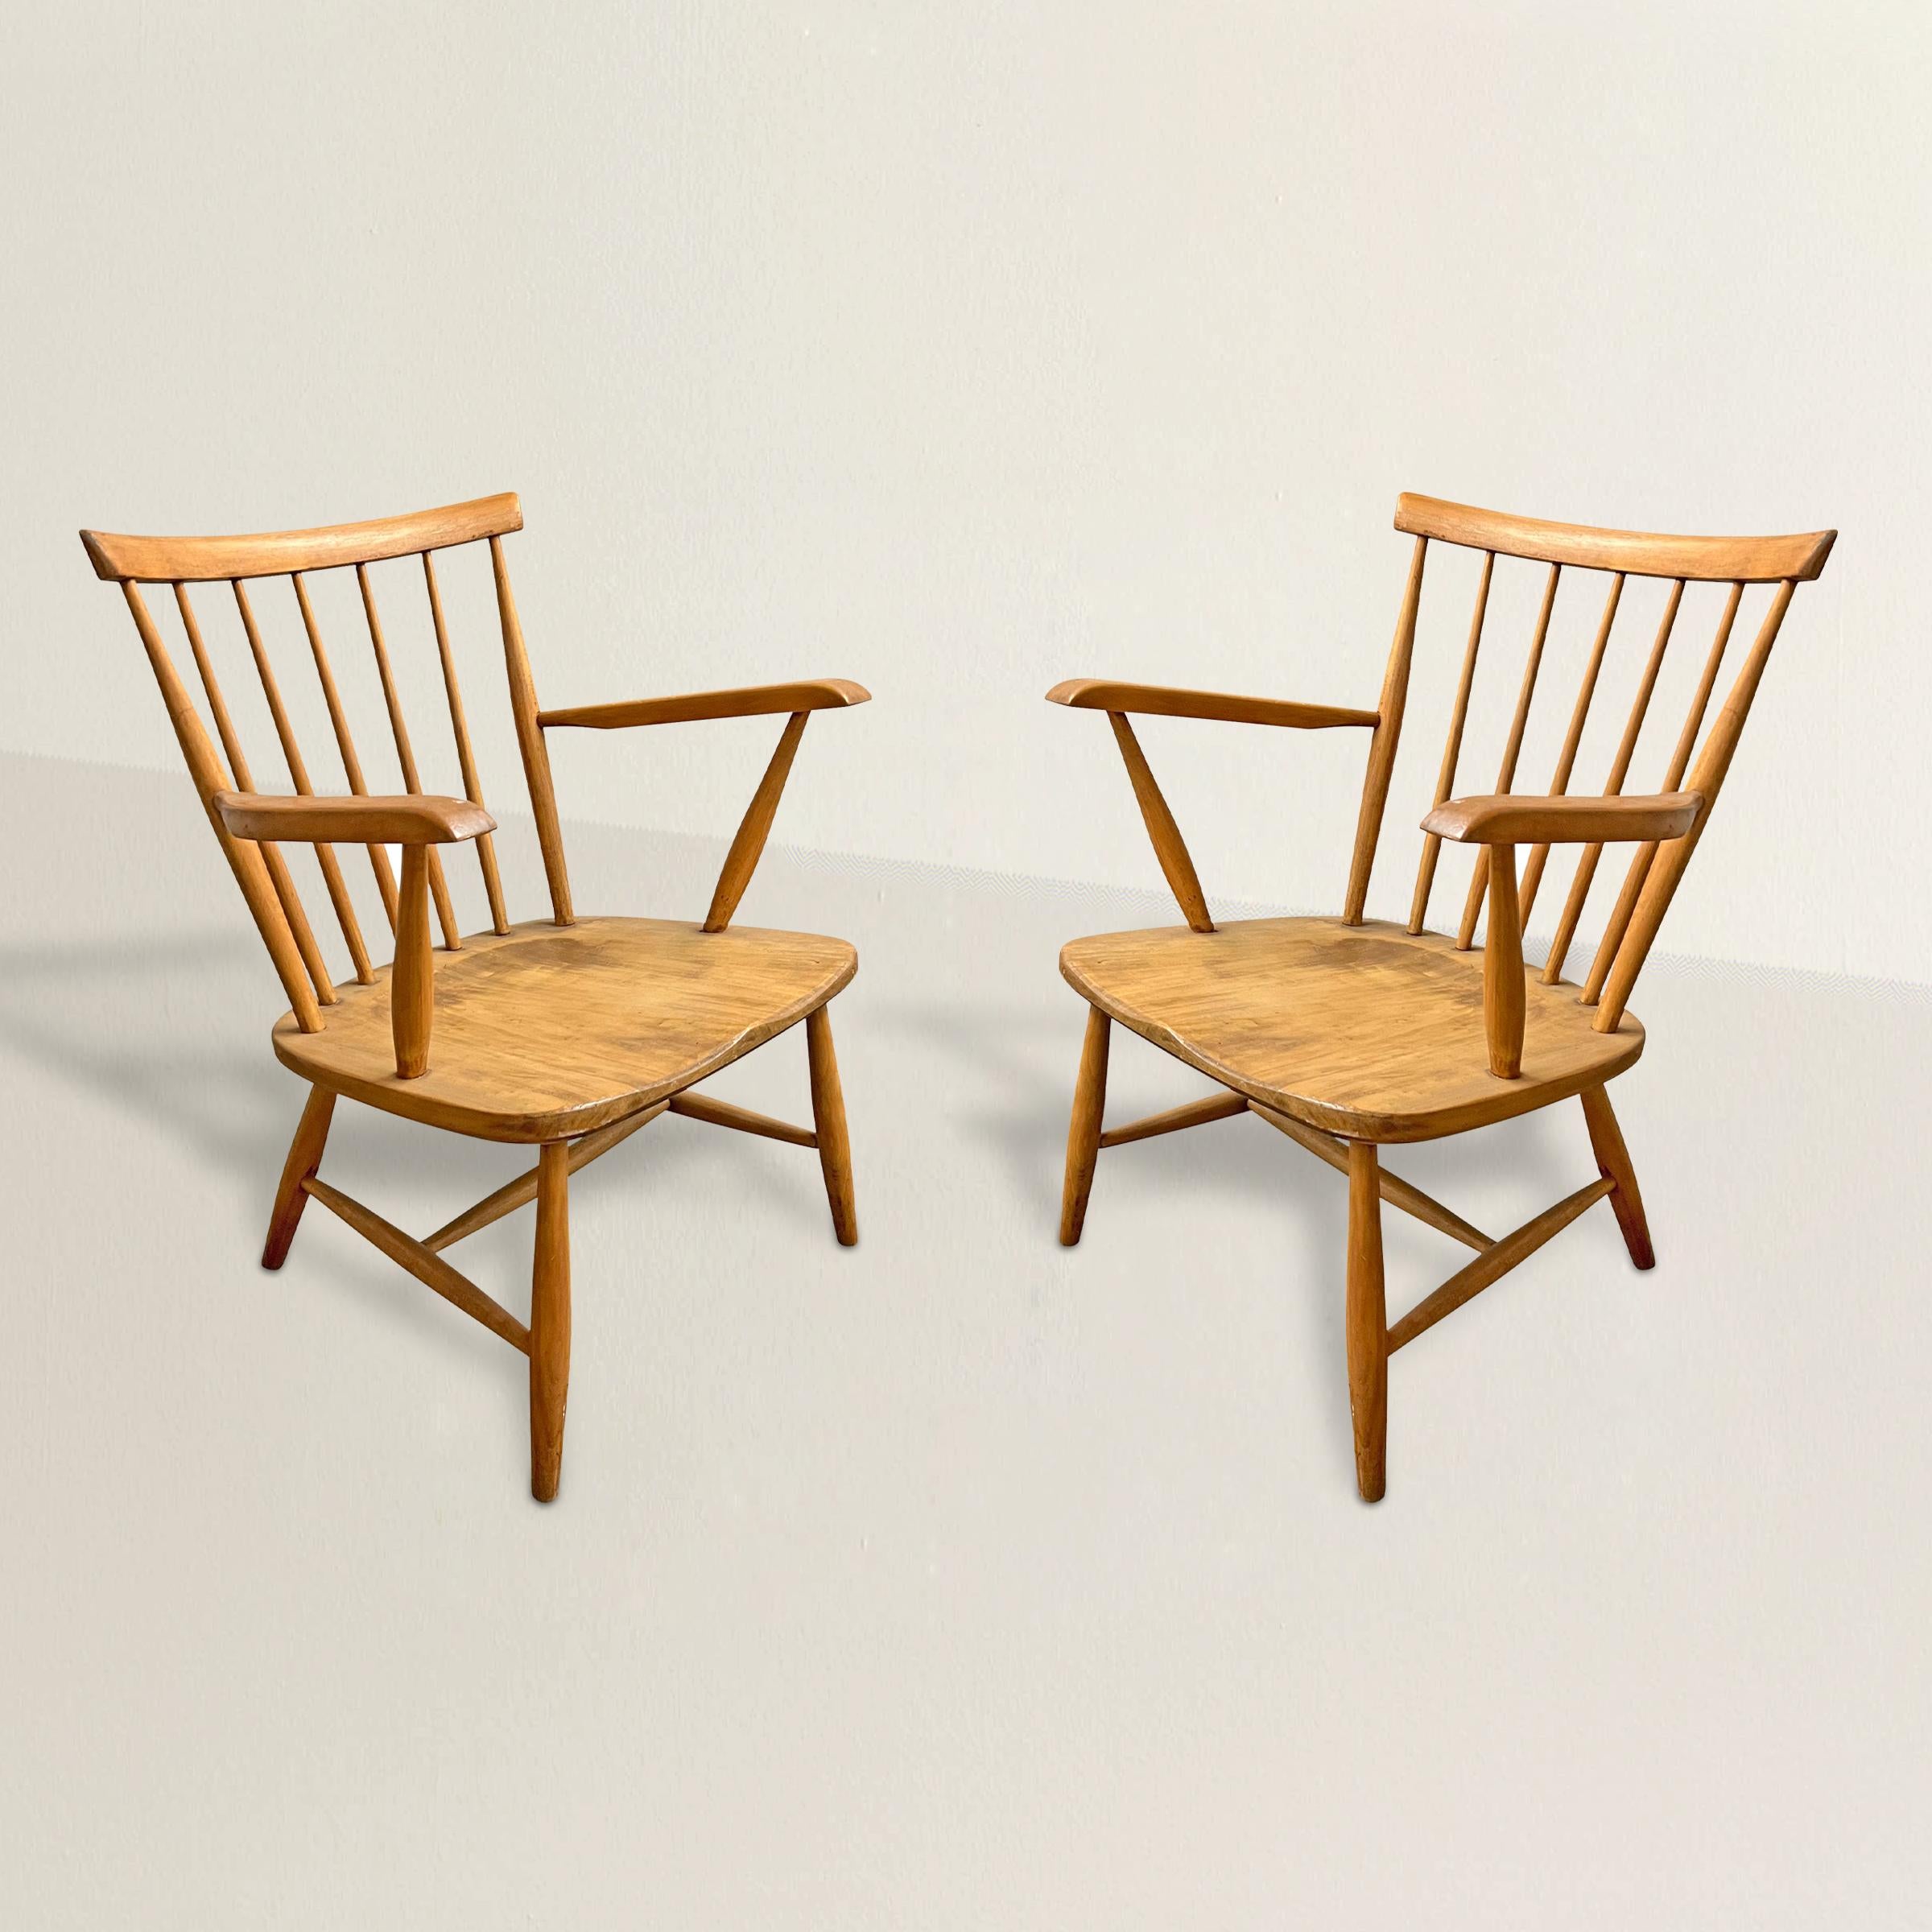 Découvrez la beauté intemporelle et le design innovant de ces fauteuils en bois de hêtre de la modernité danoise du milieu du XXe siècle. Ces chaises, qui s'inspirent du design traditionnel des chaises Windsor, allient harmonieusement le meilleur de